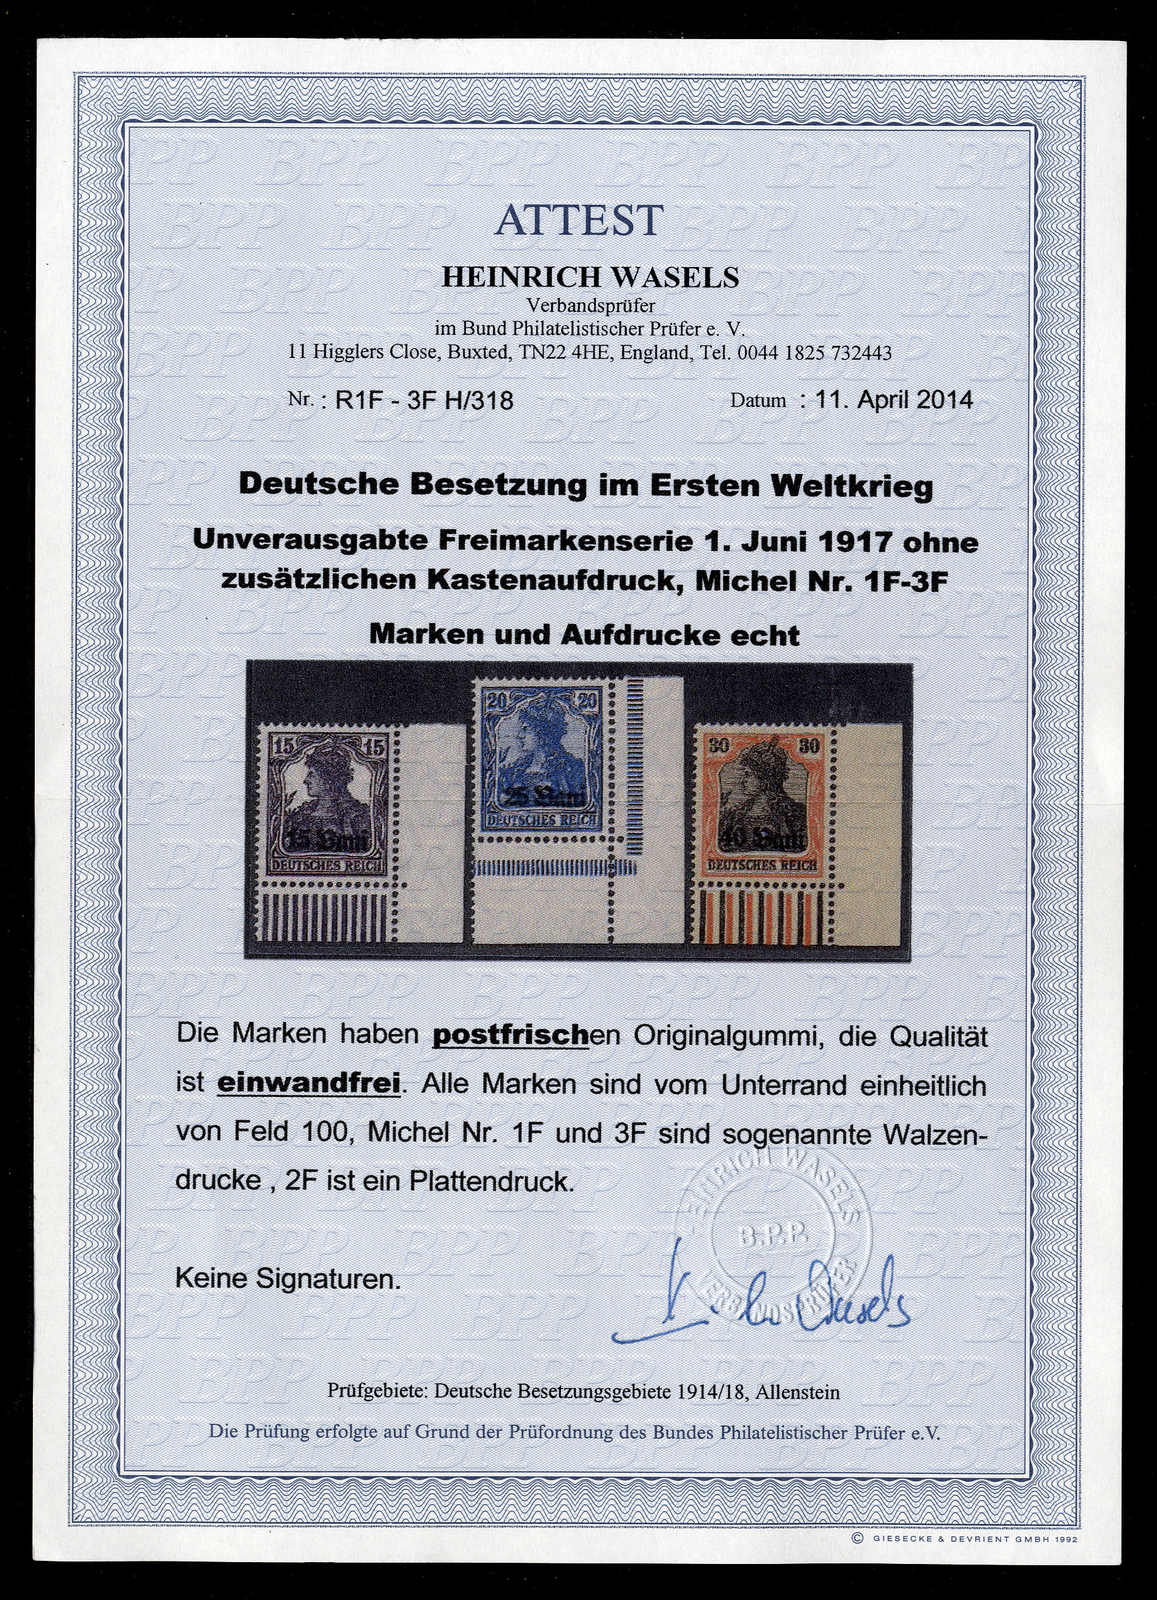 Lot 515 - sammlungen und posten sammlungen und posten altdeutschland -  Rolli Auctions Auction #68 Day 1